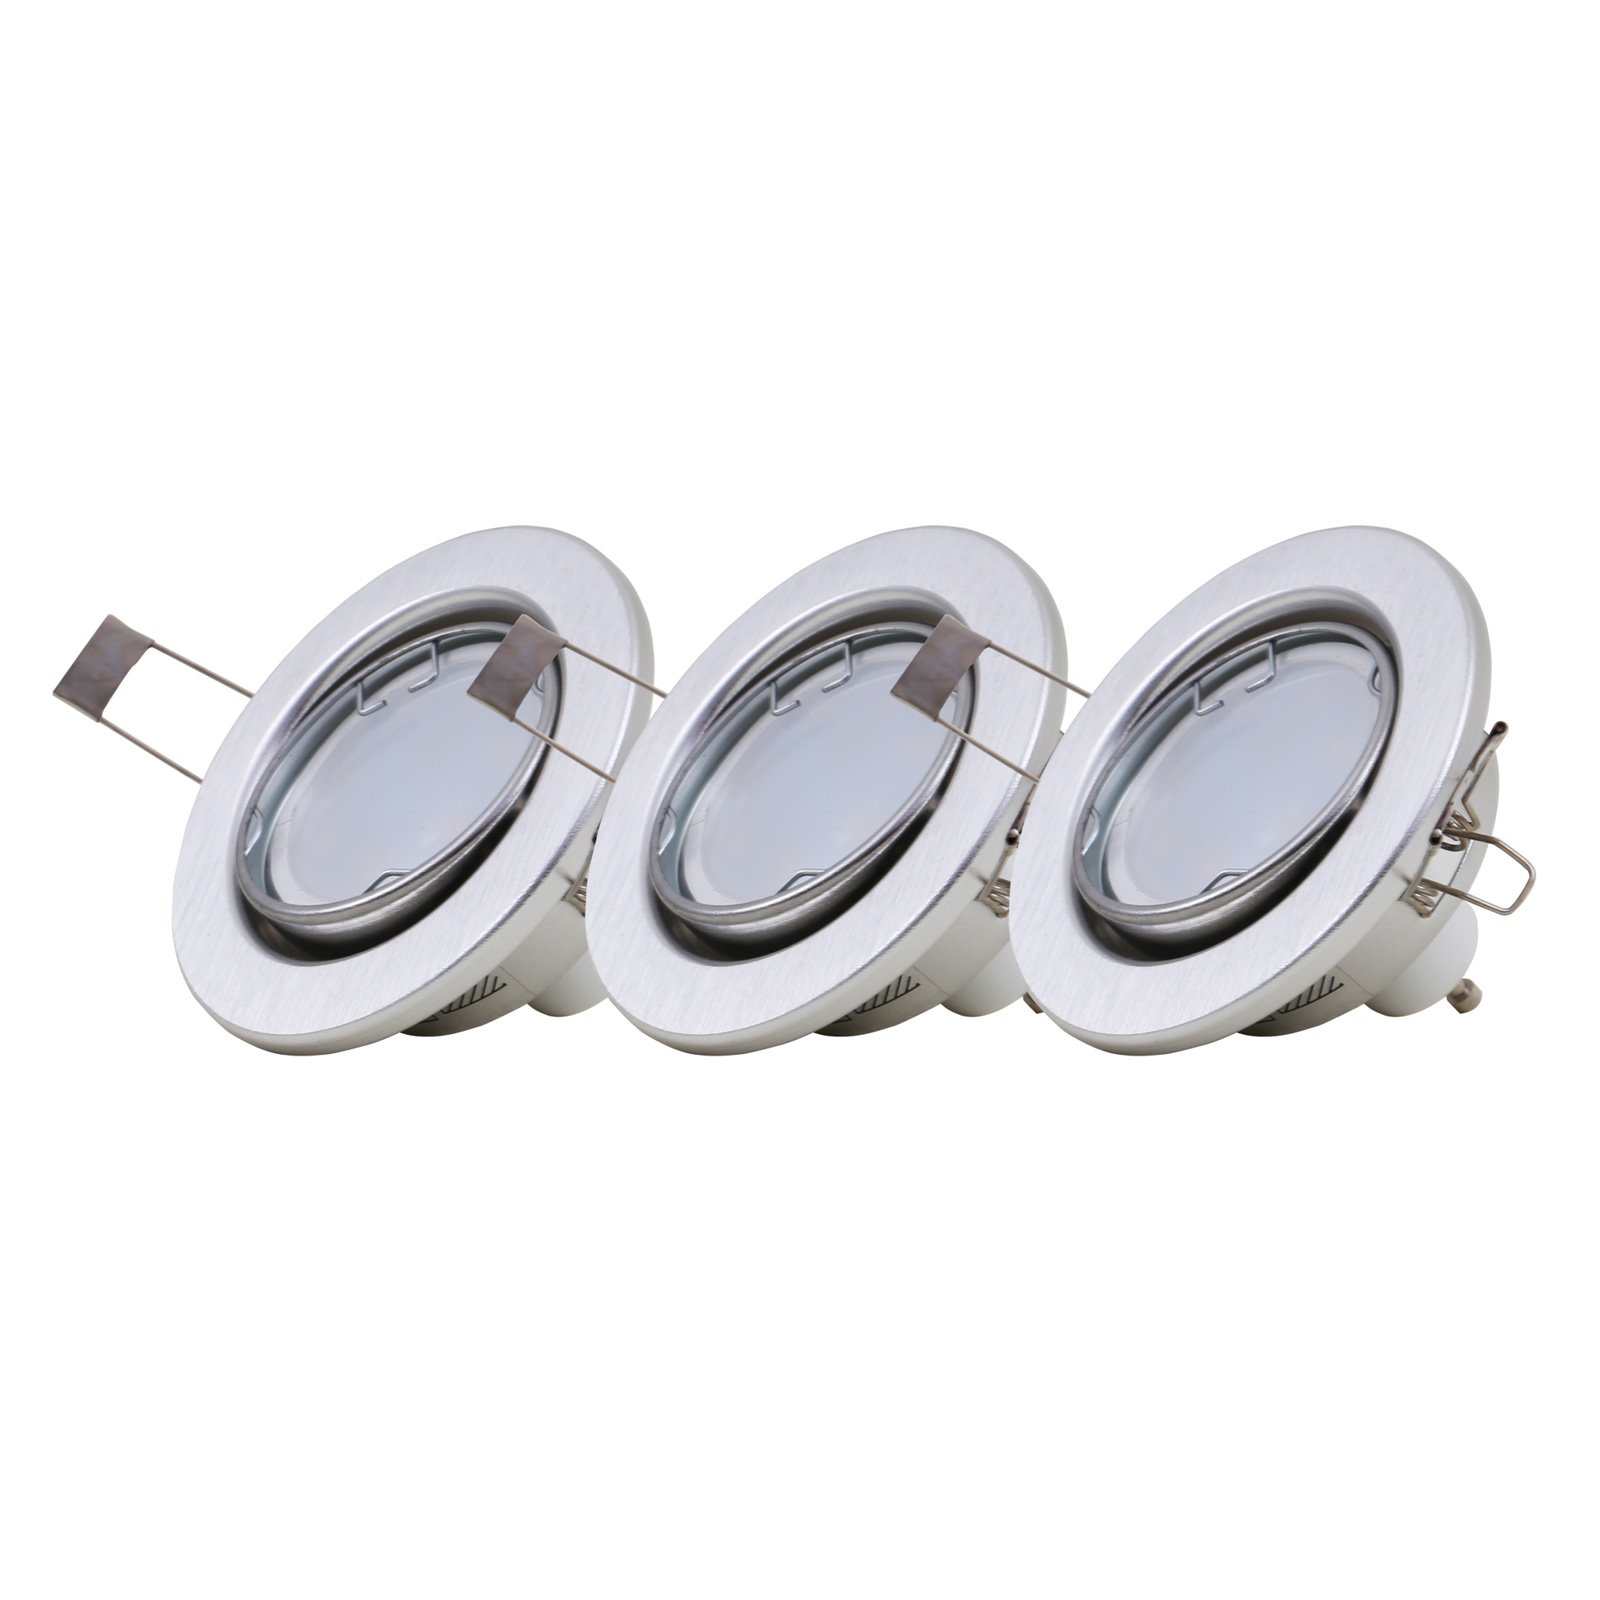 LED-inbyggnadslampa 7221-039 Fit 3-pack, aluminium